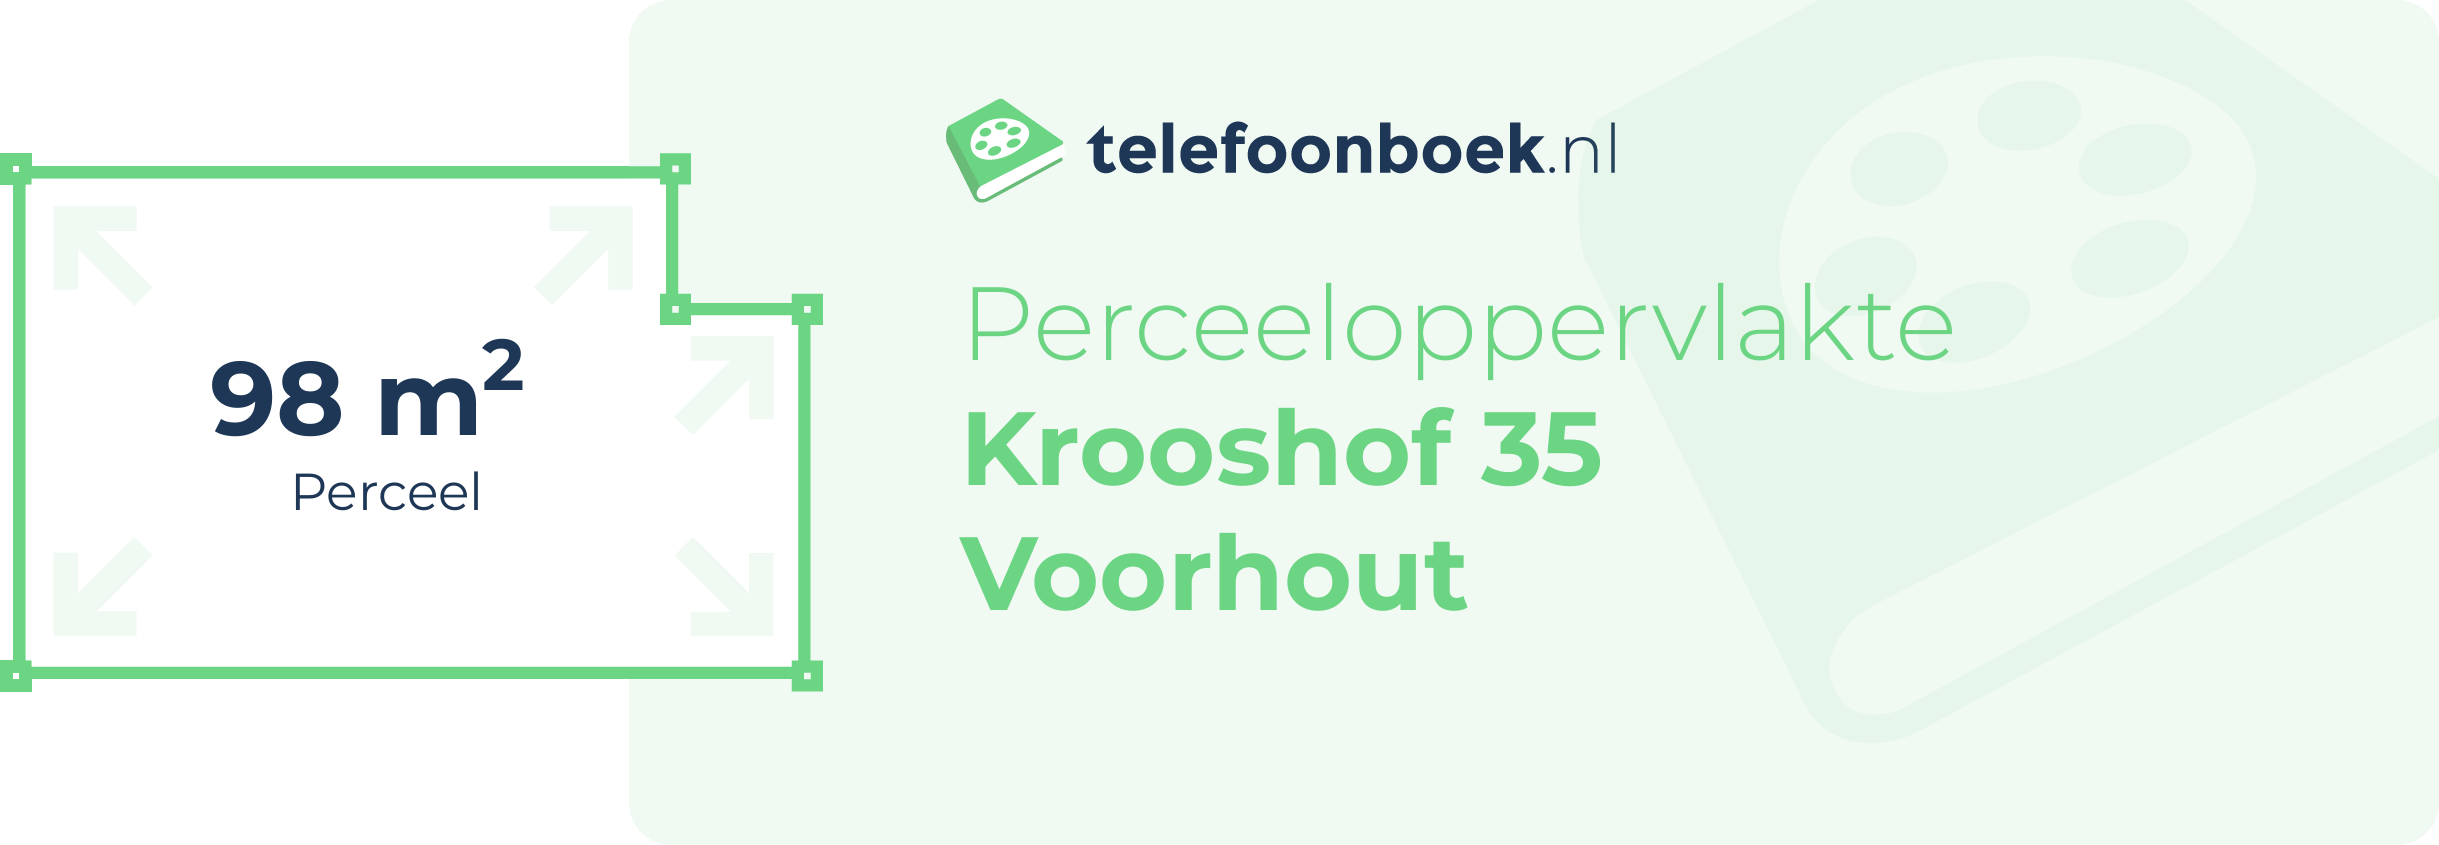 Perceeloppervlakte Krooshof 35 Voorhout